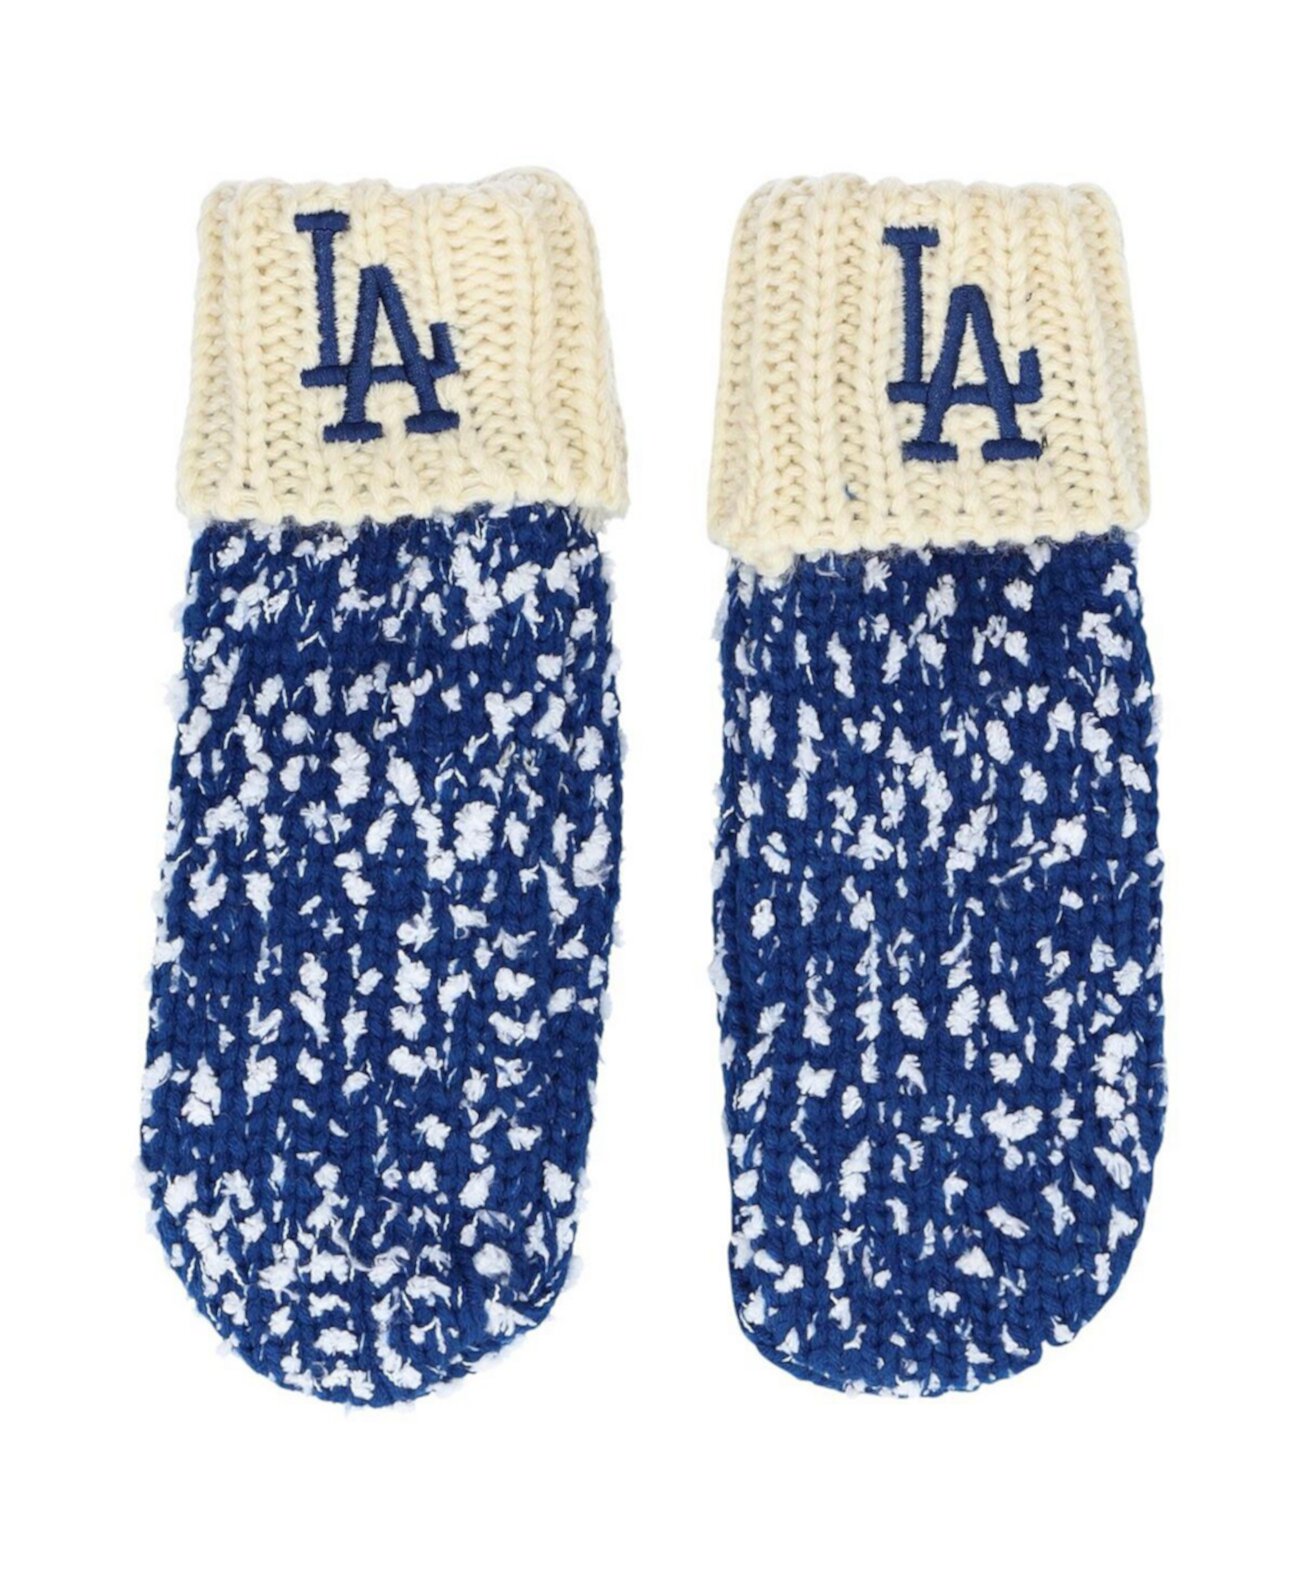 Мужские кремовые варежки Royal Los Angeles Dodgers Confetti FOCO